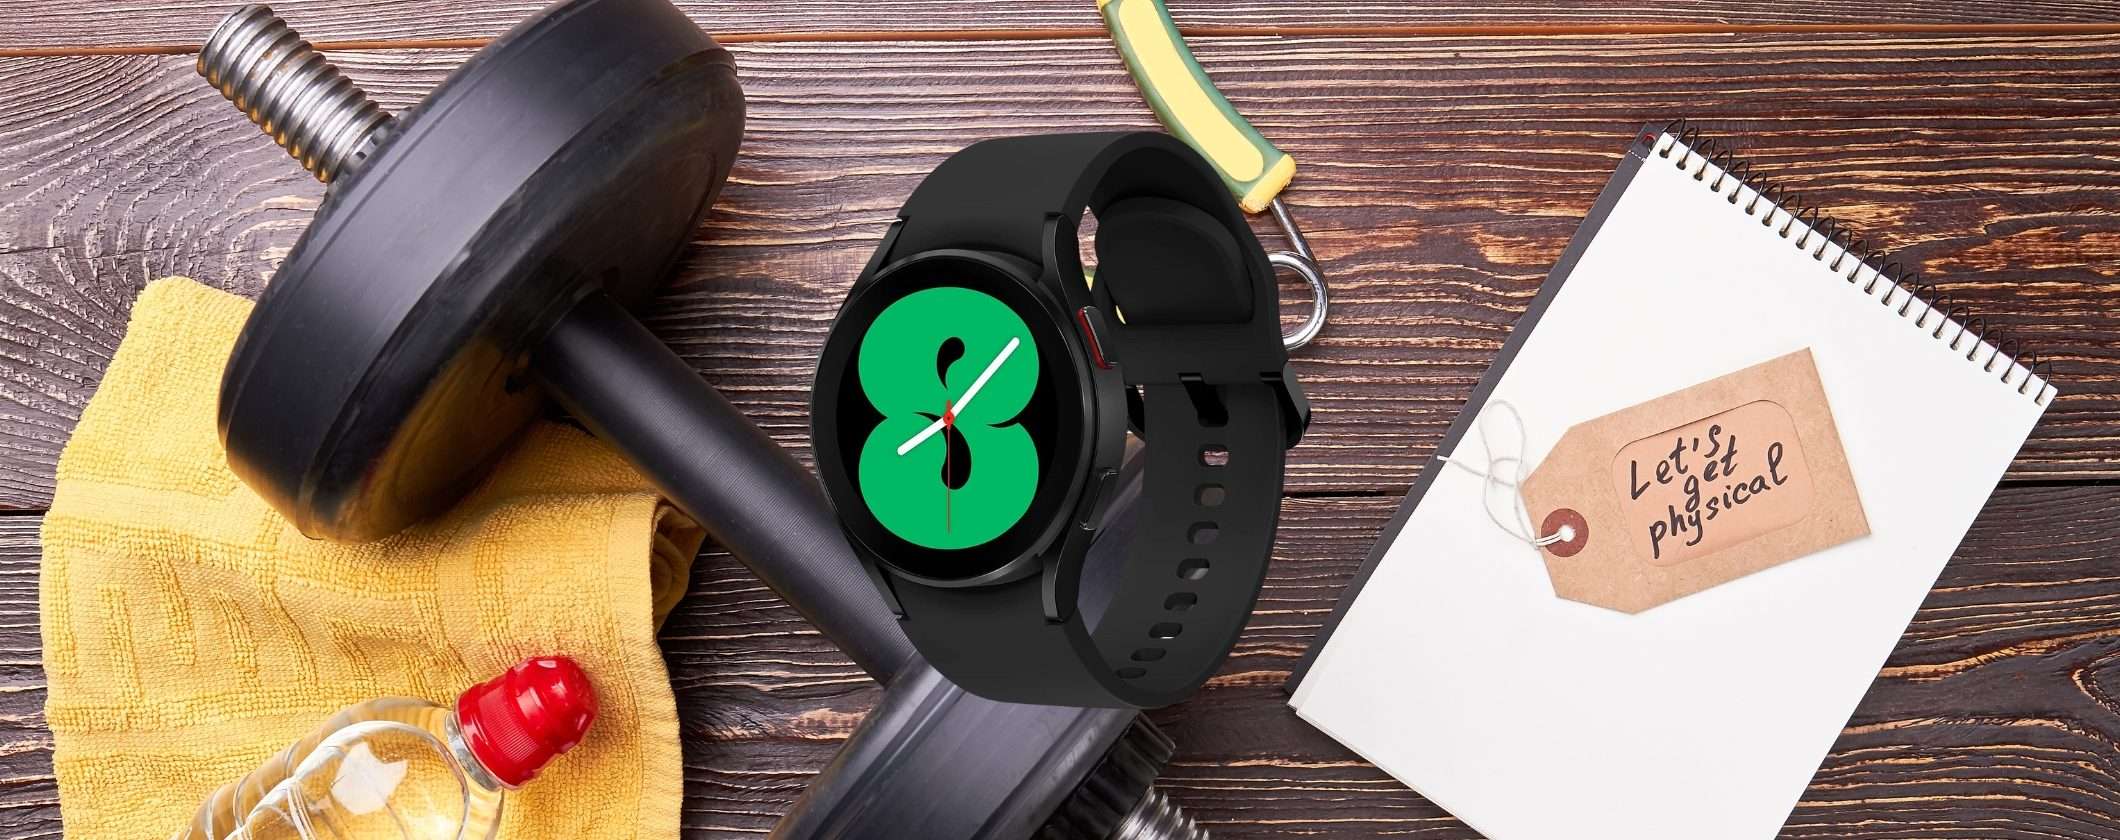 Samsung Galaxy Watch4 in regalo su Amazon